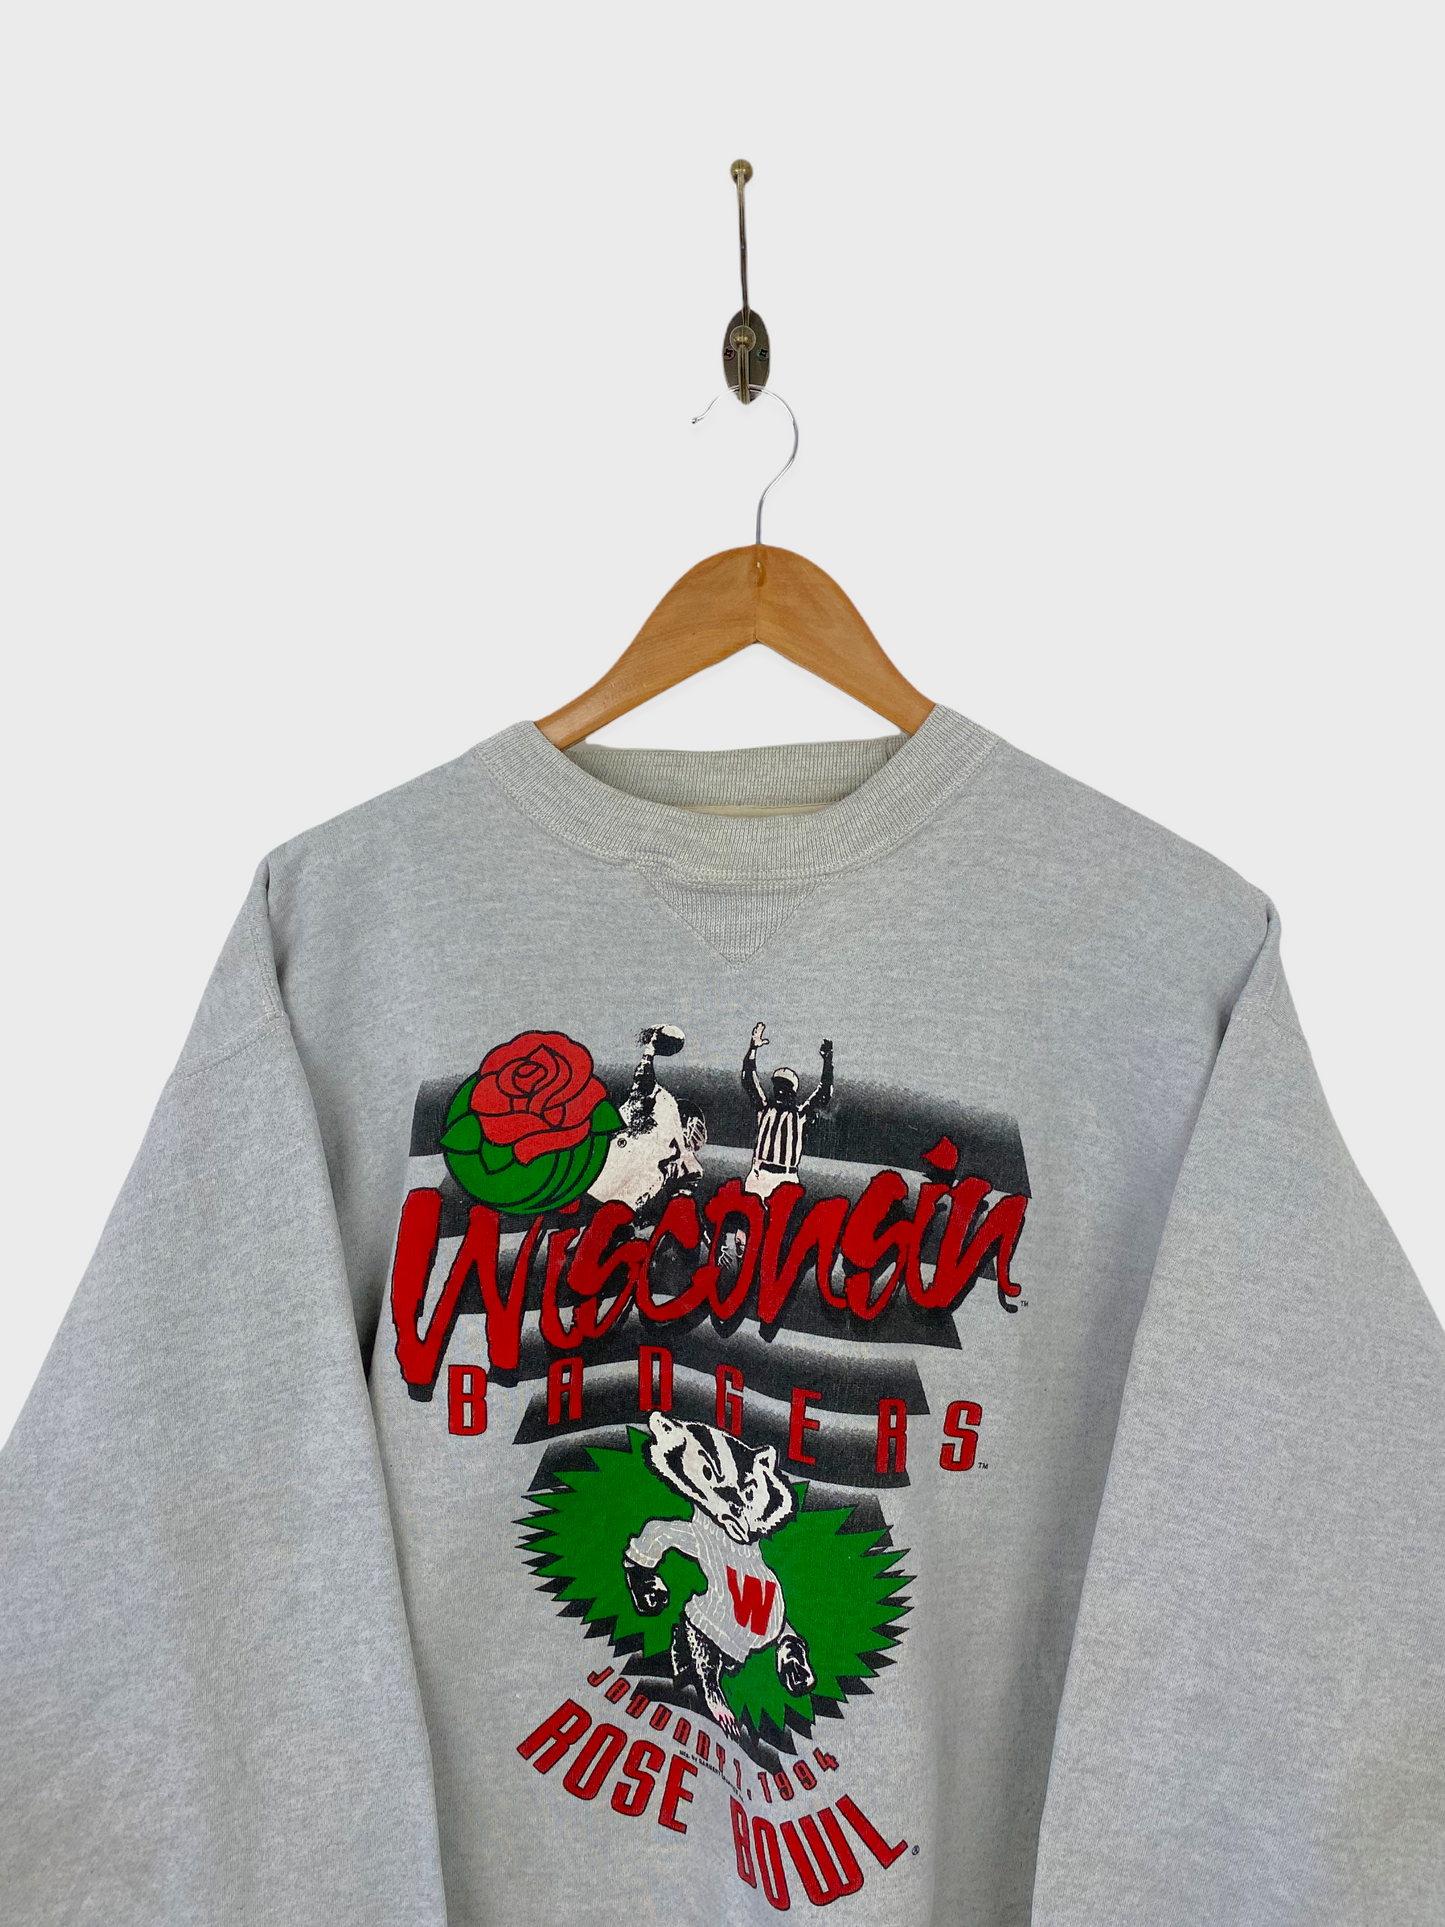 1994 Wisconsin Badgers Vintage Sweatshirt Size 12